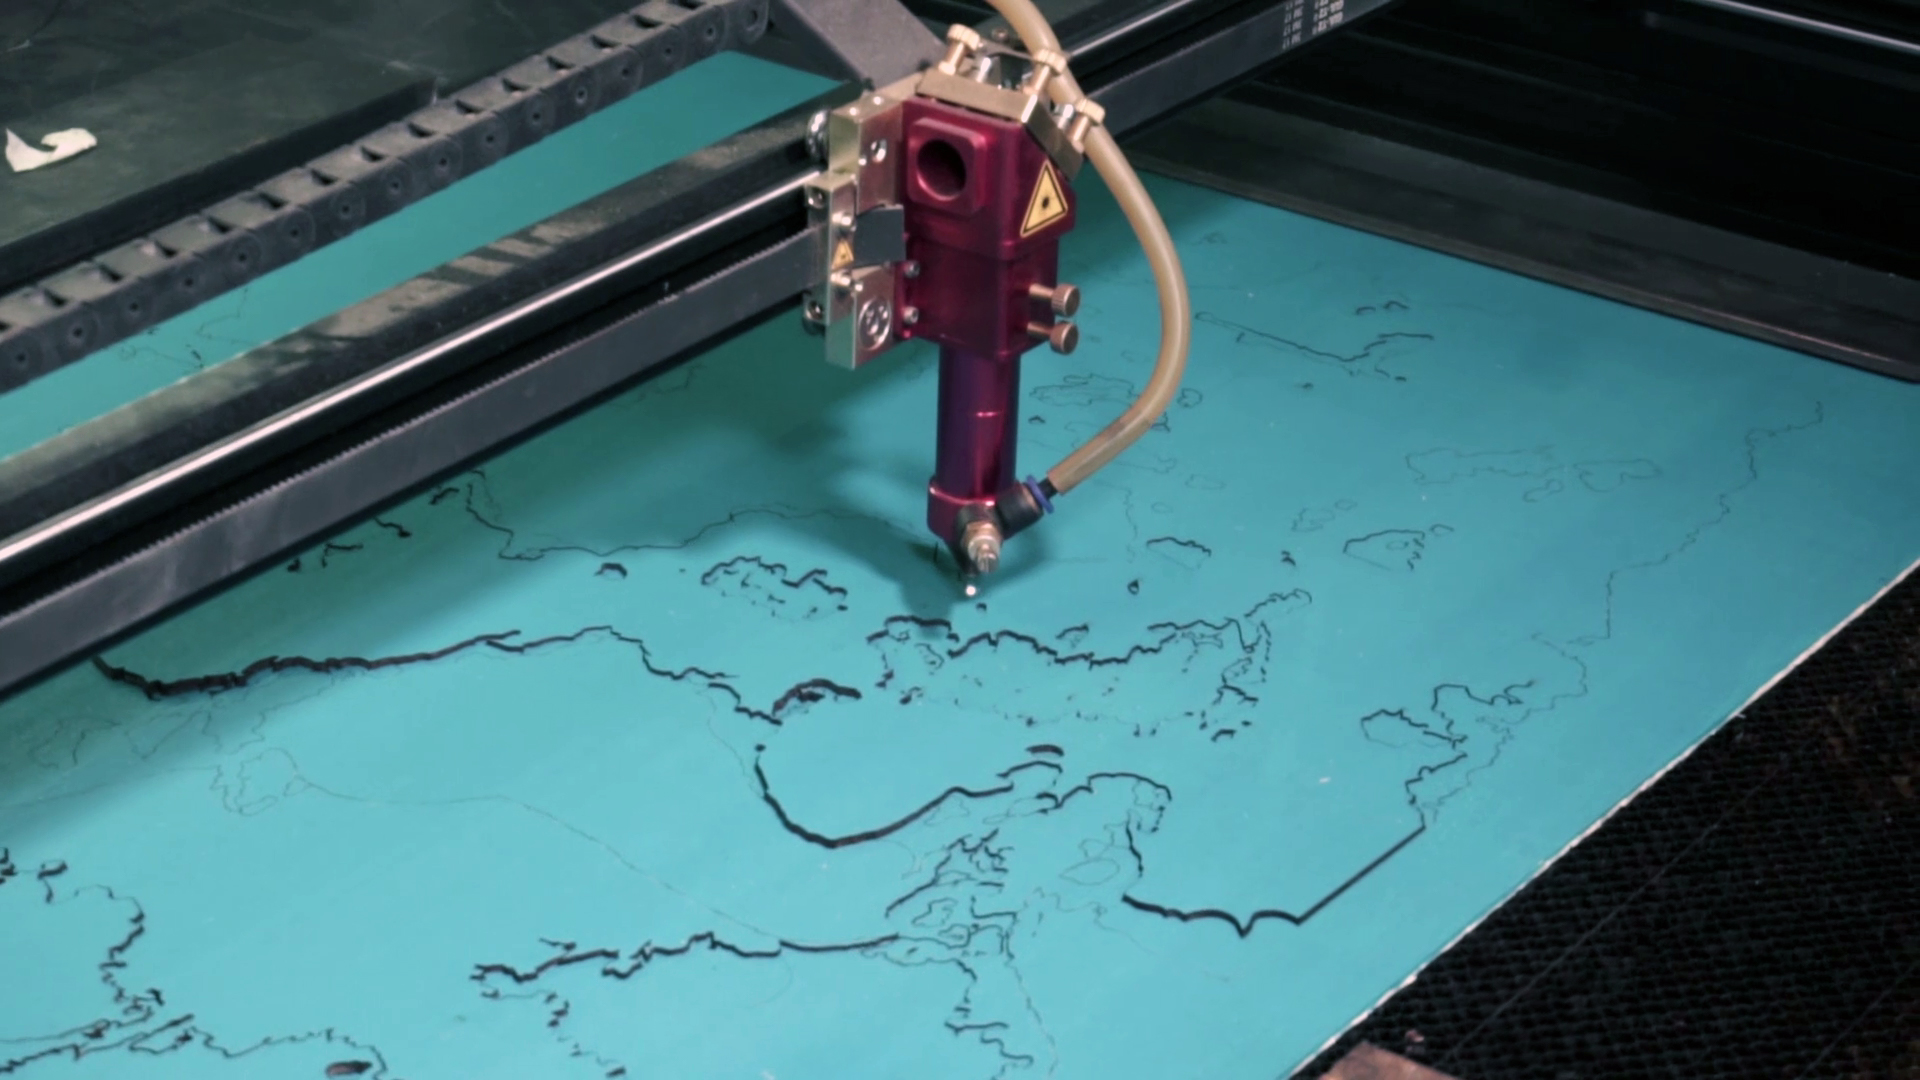 A laser machine cuts out a decorative map.